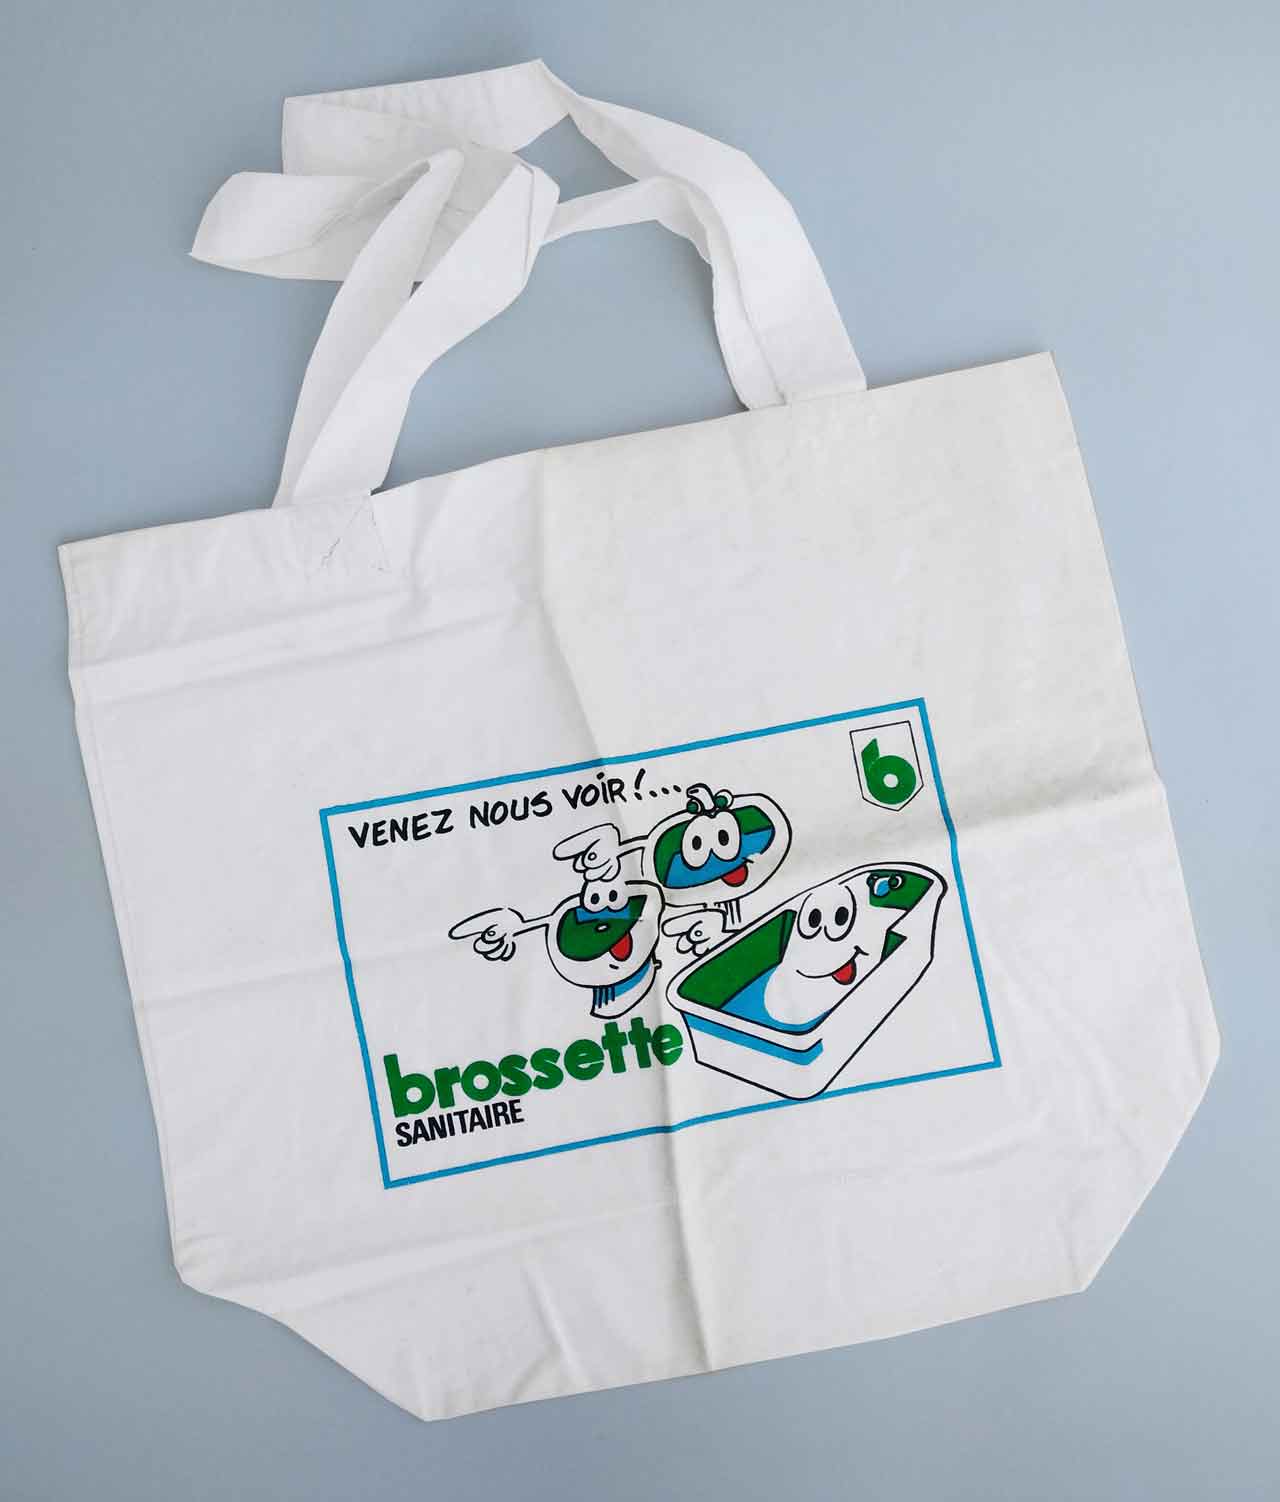 Brossette sac tissu -1986 lavabo radiateur baignoire wc